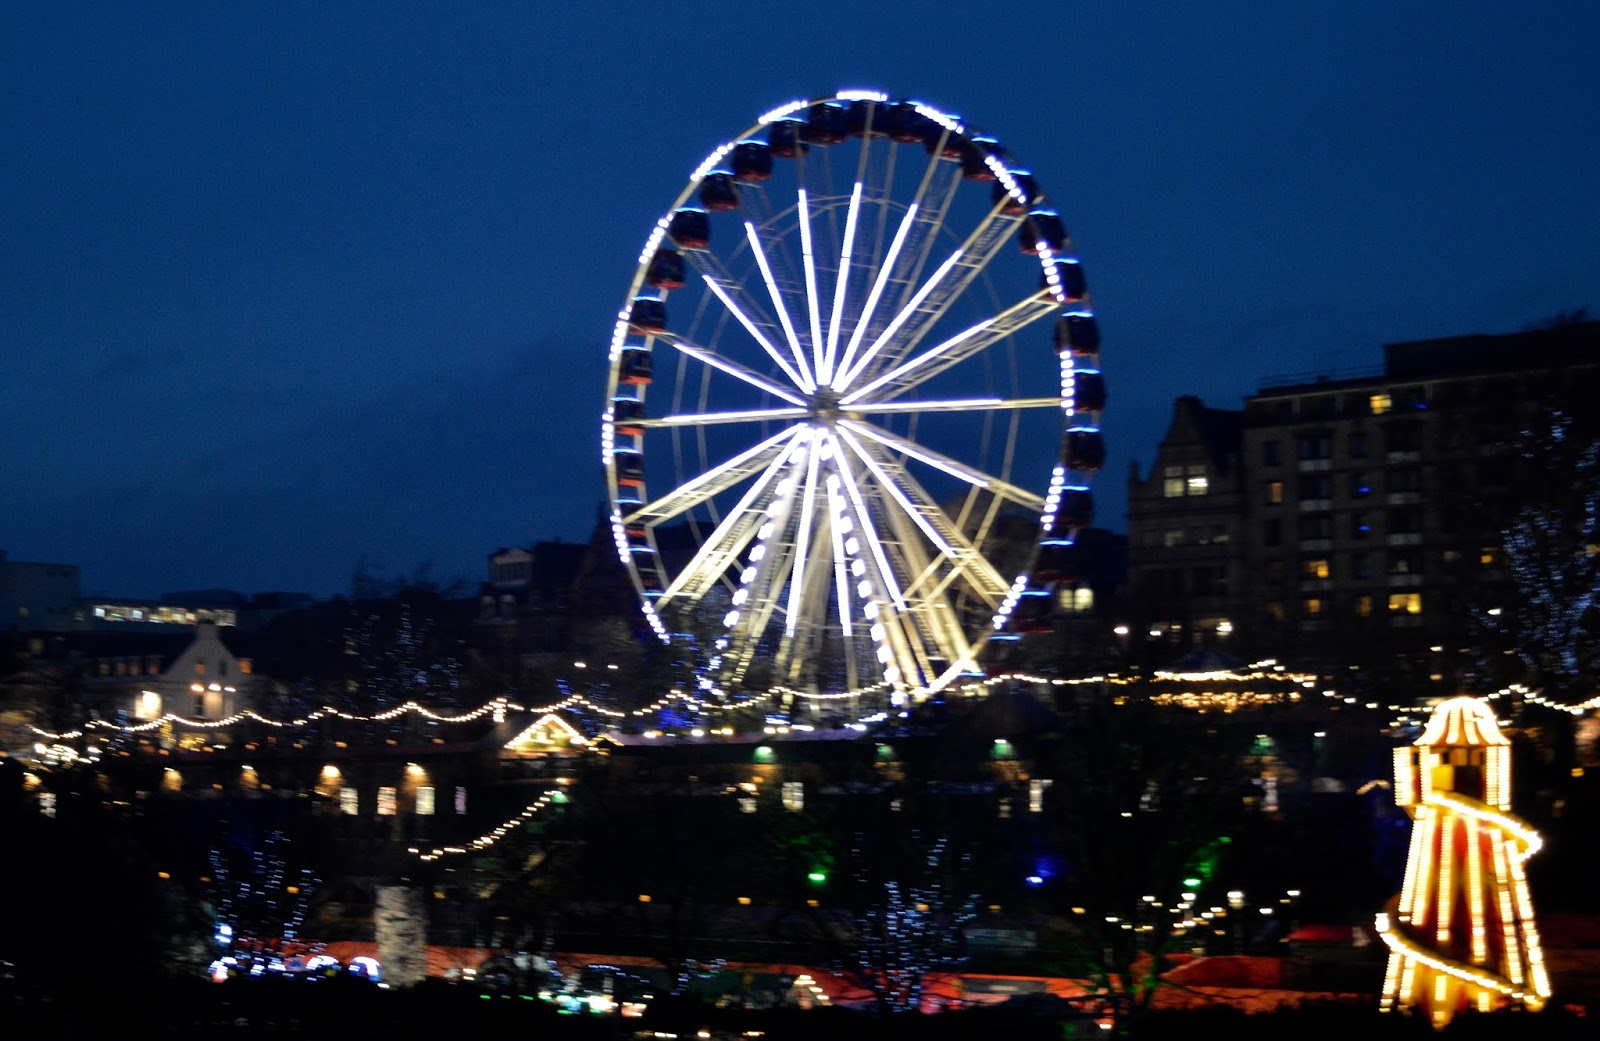 10 Reasons to Visit Edinburgh in December - Ferris Wheel